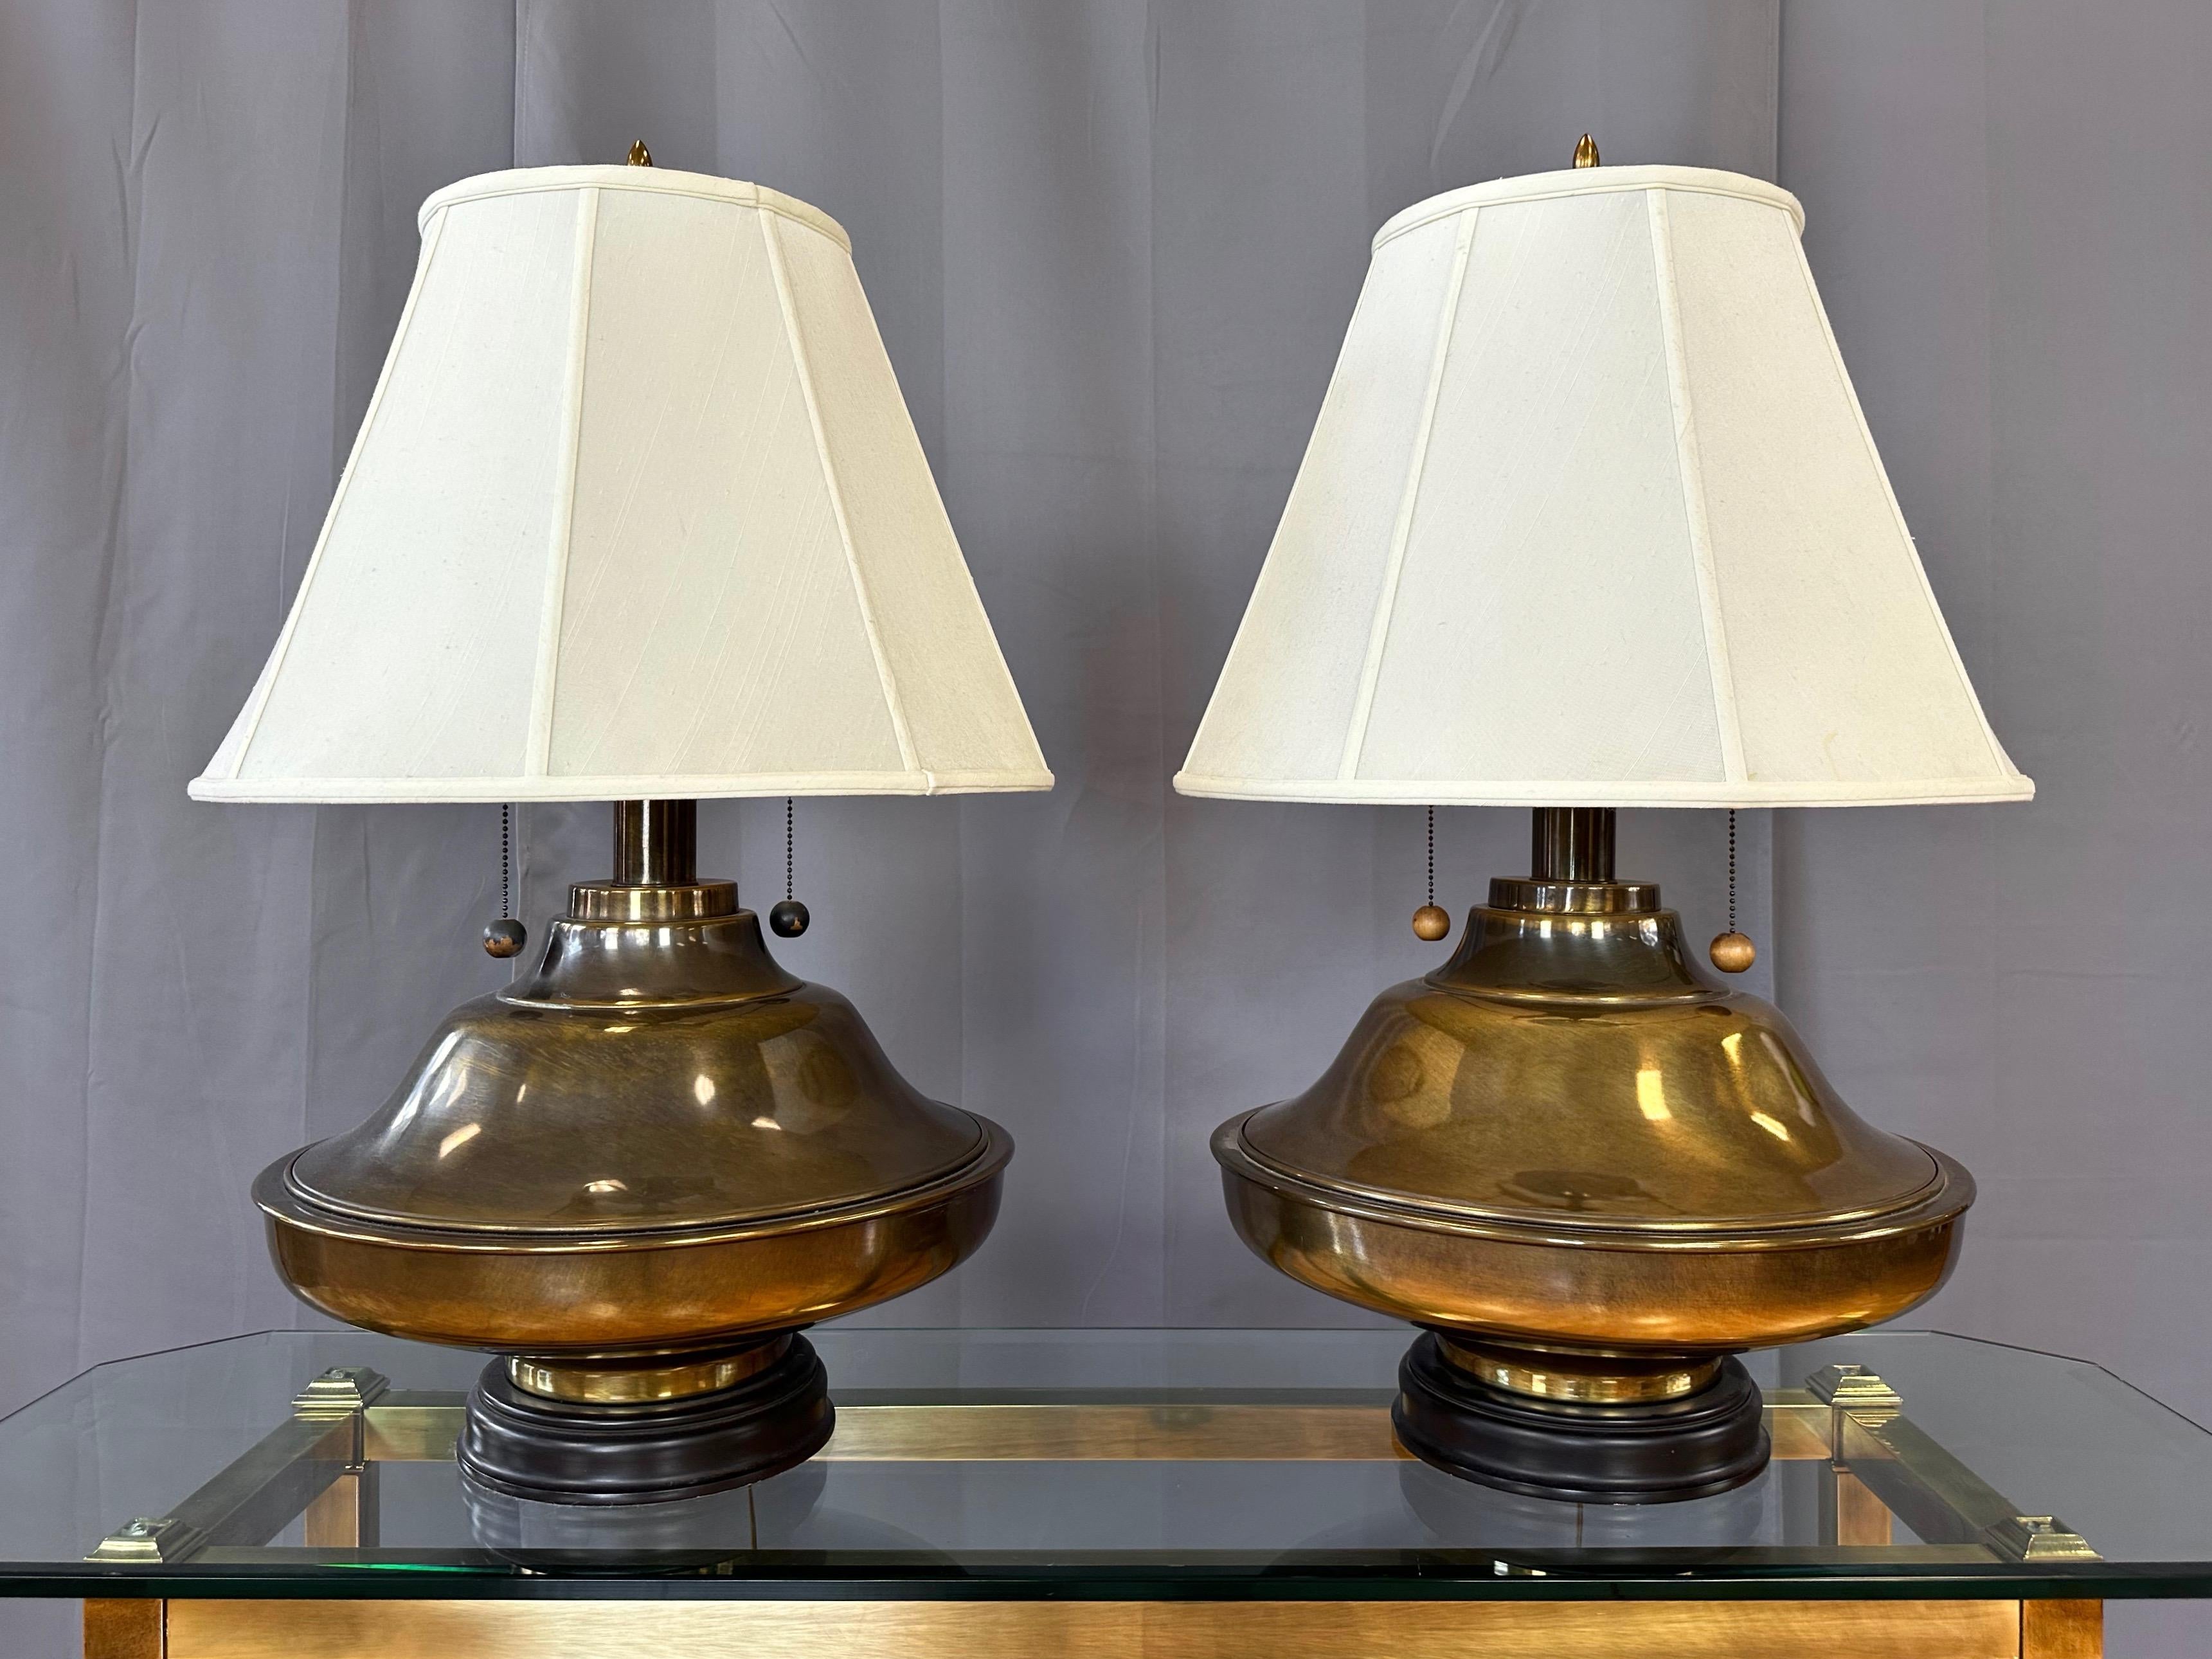 Ein Paar monumentaler Tischlampen aus antikem Messing im Marbro-Stil der 1960er Jahre im Hollywood-Regency-Stil mit Seidenschirmen.

Die sehr massiven und optisch auffälligen runden Messingkörper weisen eine recht ungewöhnliche Form auf, die bei